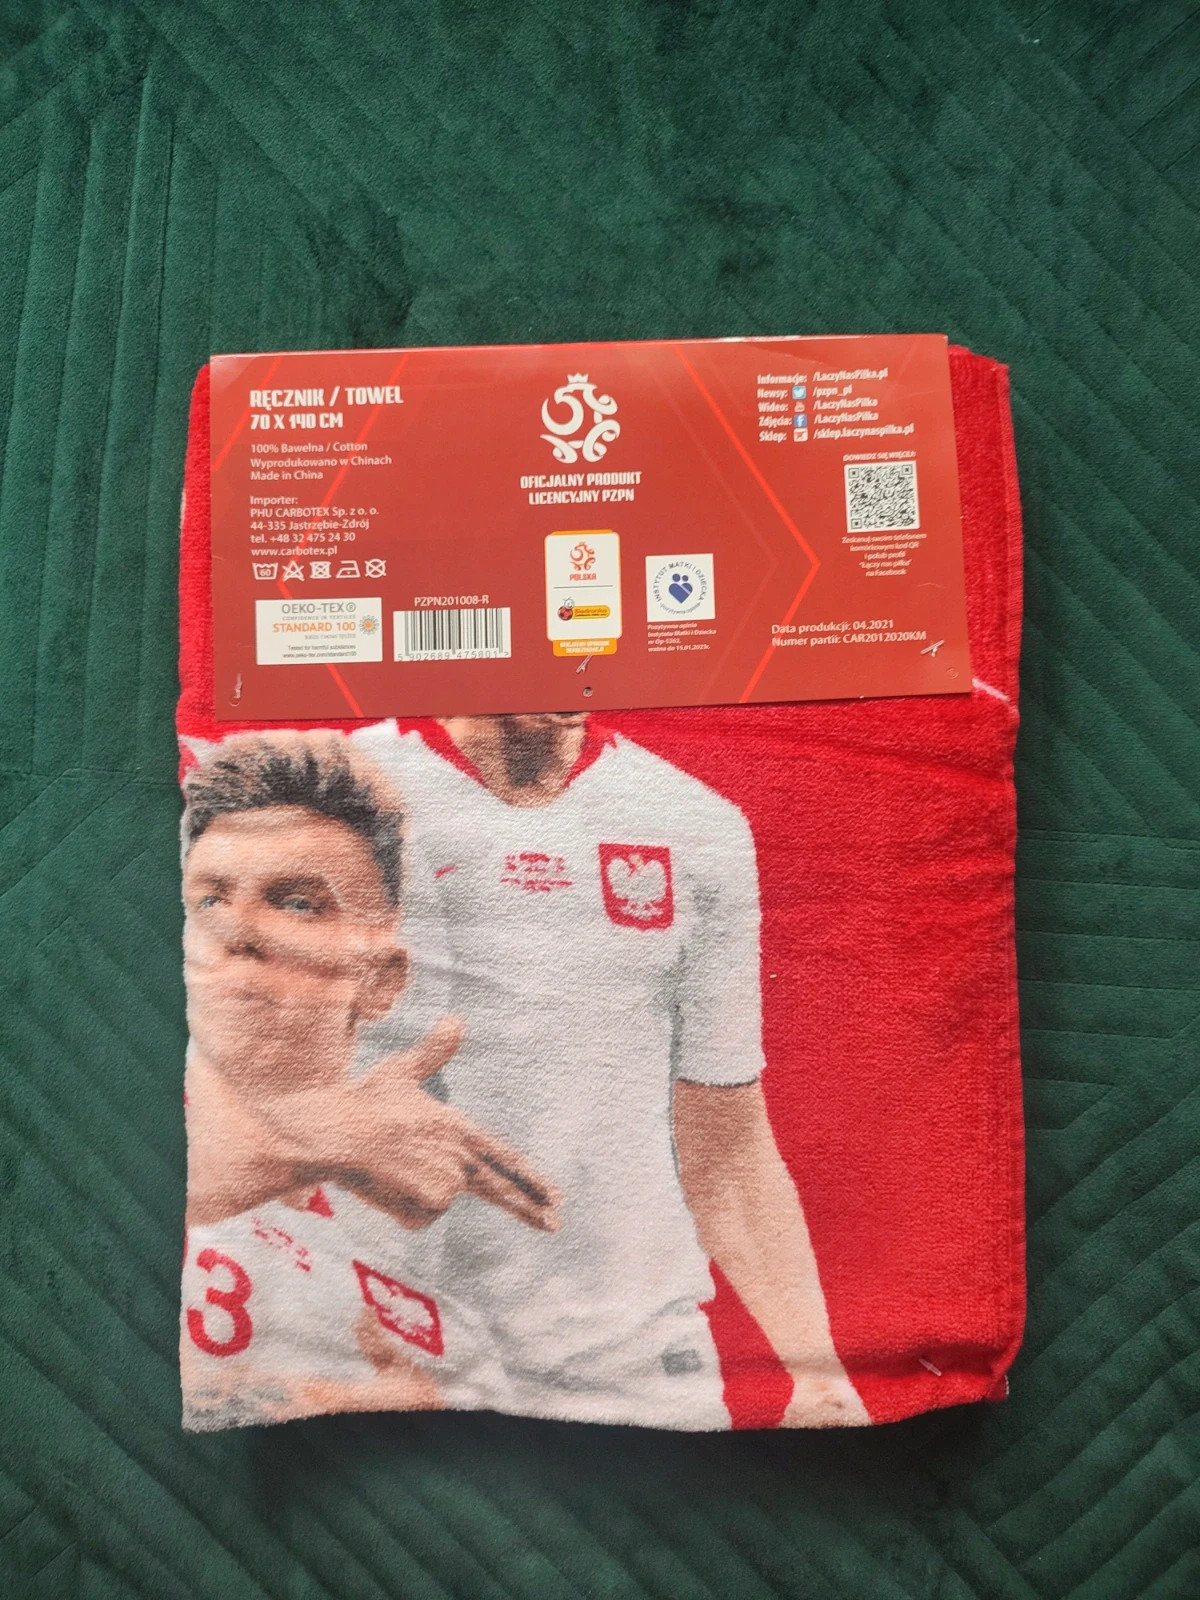 Ręcznik polska reprezentacja oficjalny produkt